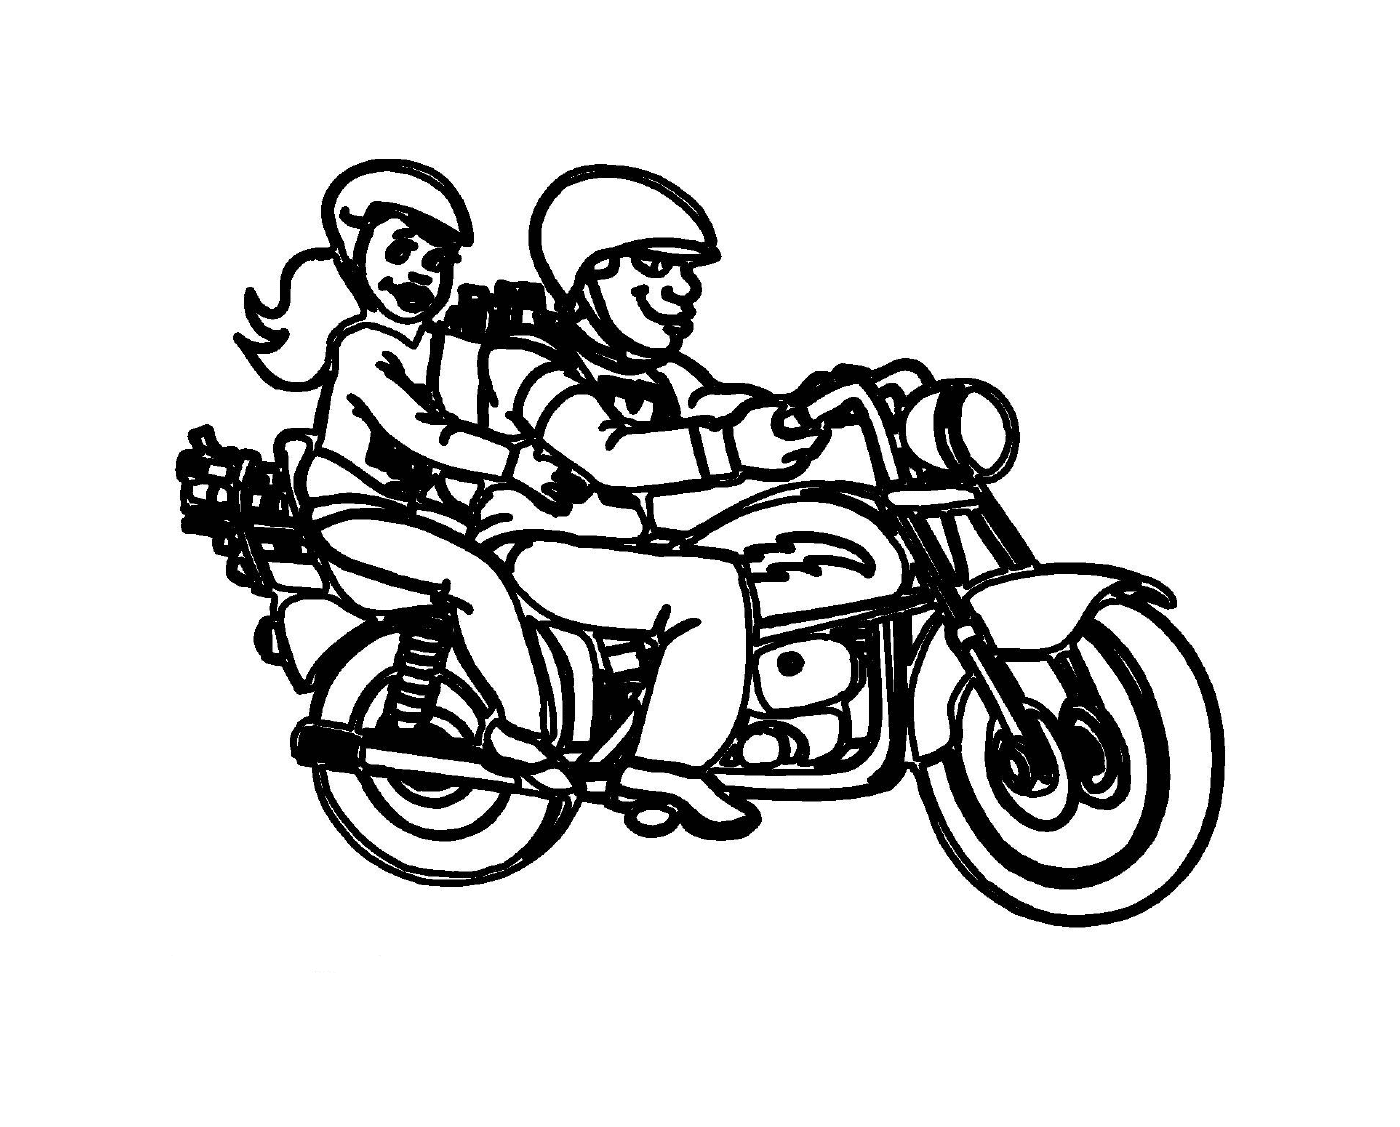  zwei Personen auf Motorrädern 